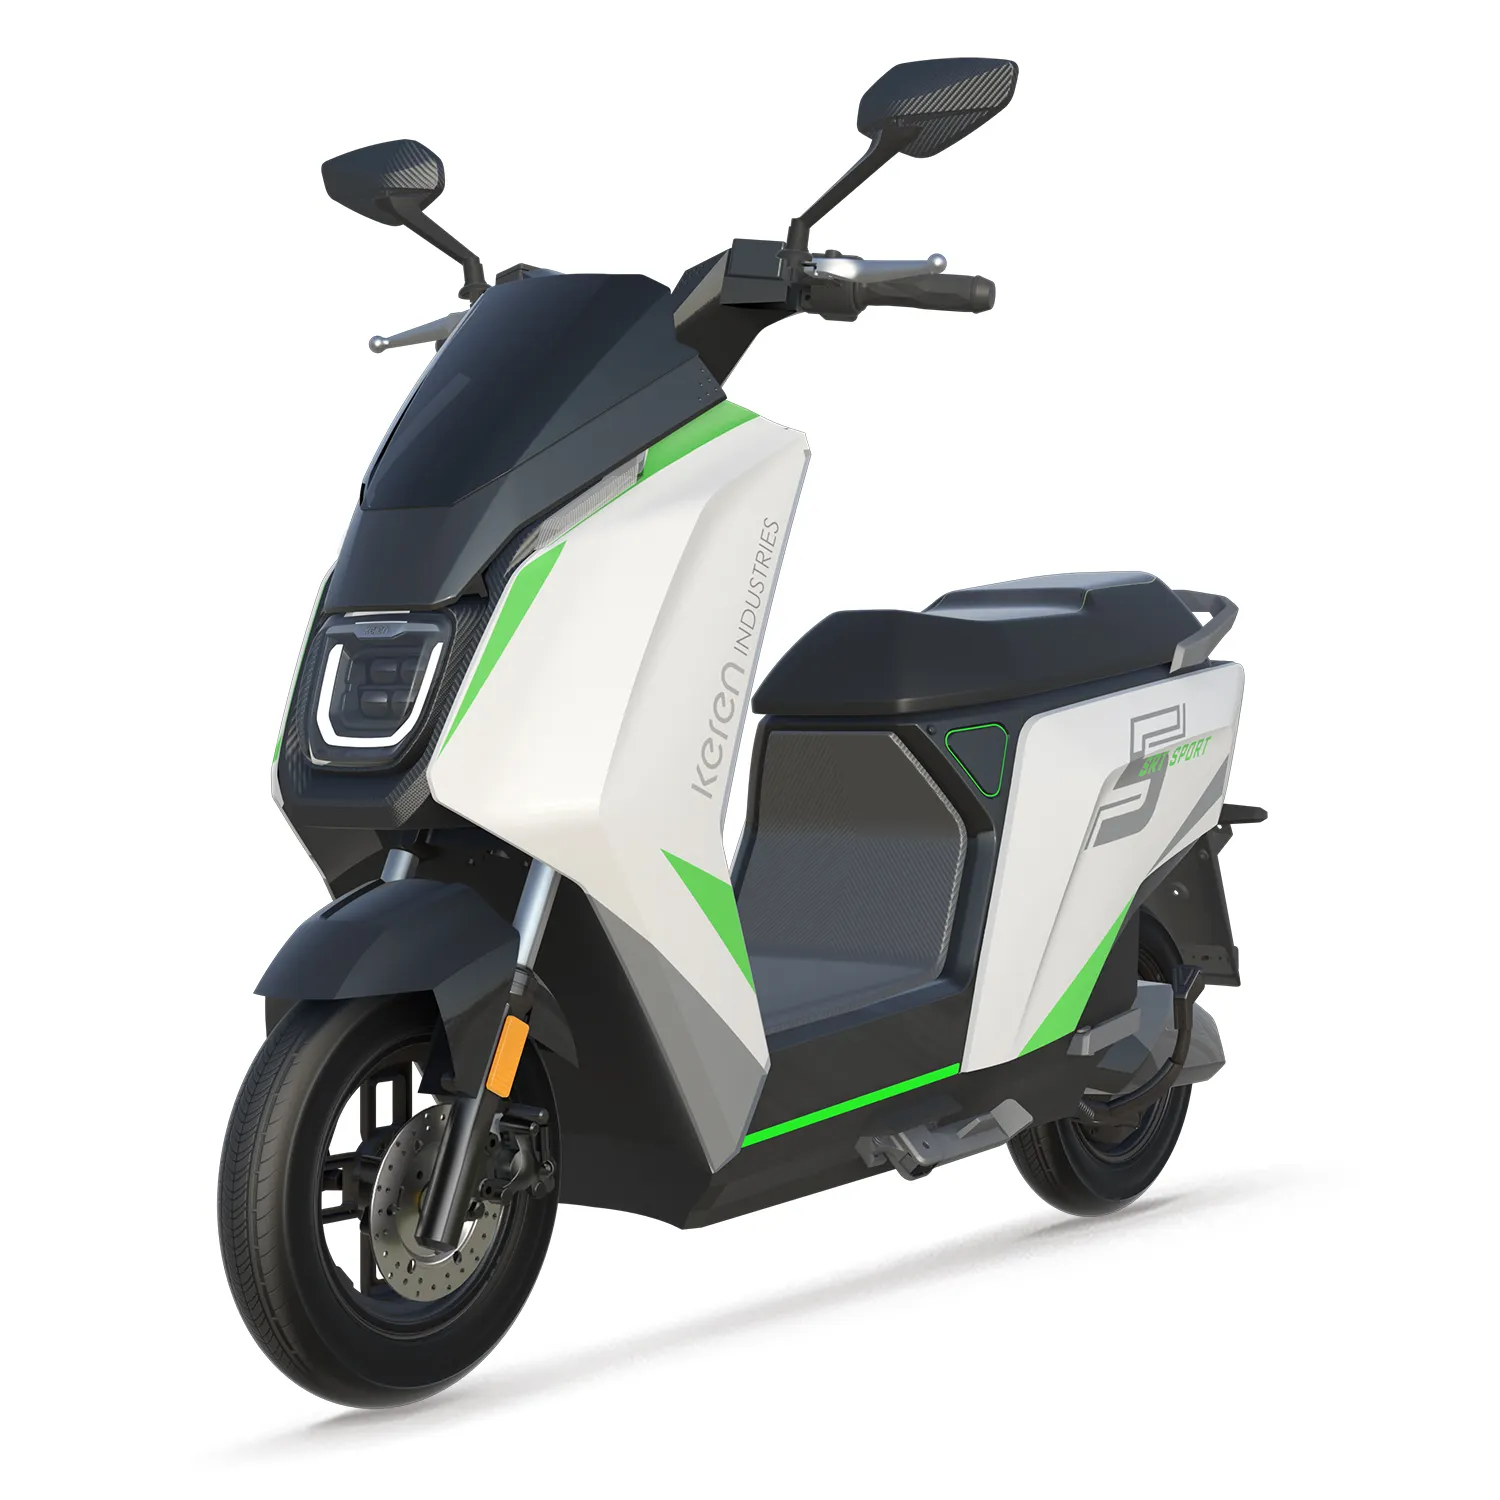 EEC COC ev scooter motosiklet 1800w 72V 32.5Ah lityum pil 72km/saat elektrikli motosiklet